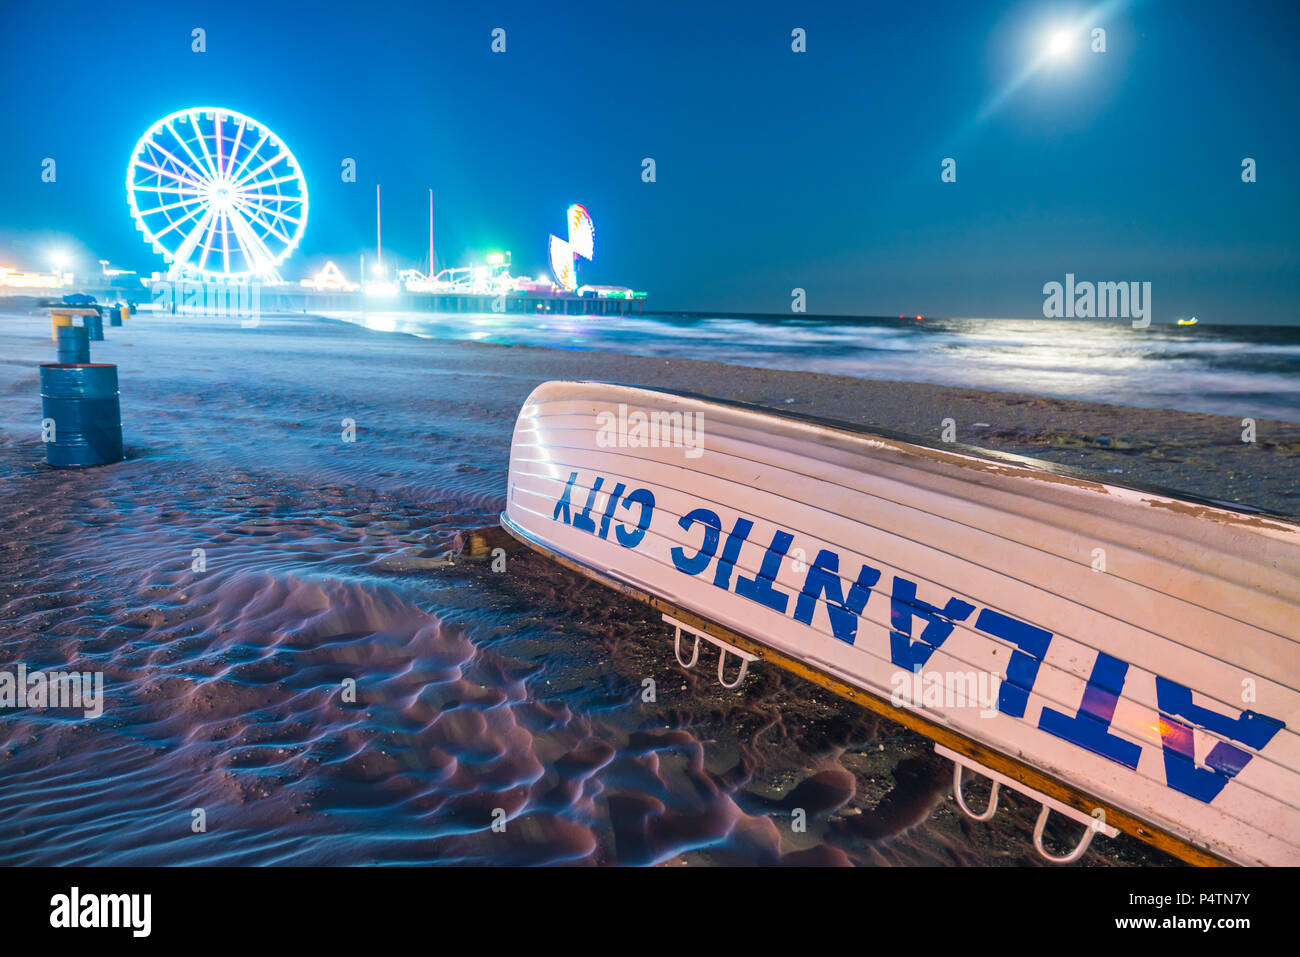 Atlantic City, New Jersey, USA. 09-04-17 : Atlantic City Boardwalk de nuit. Banque D'Images